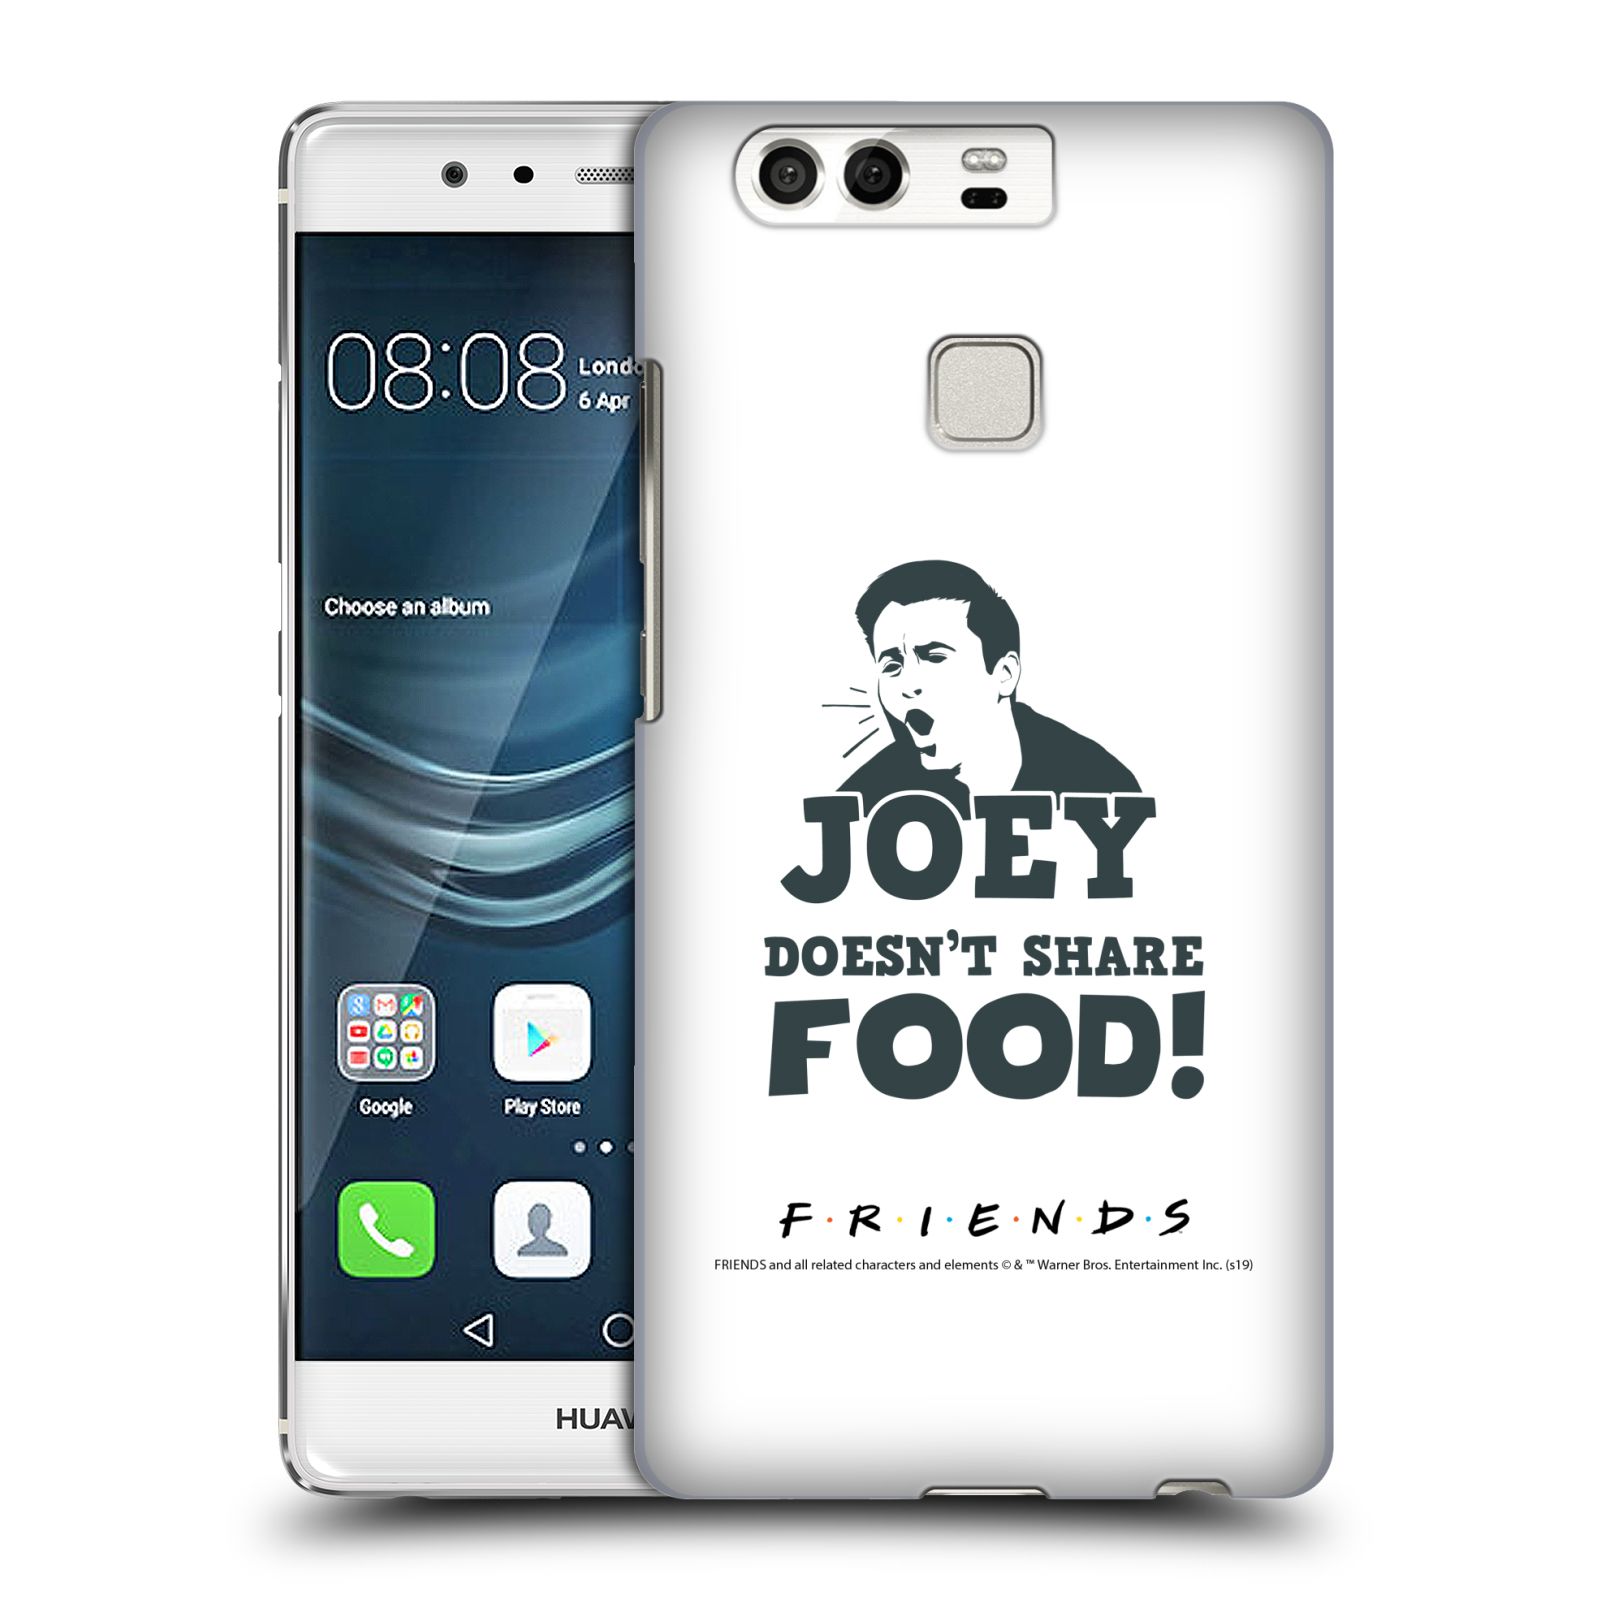 Pouzdro na mobil Huawei P9 / P9 DUAL SIM - HEAD CASE - Seriál Přátelé - Joey se o jídlo nedělí